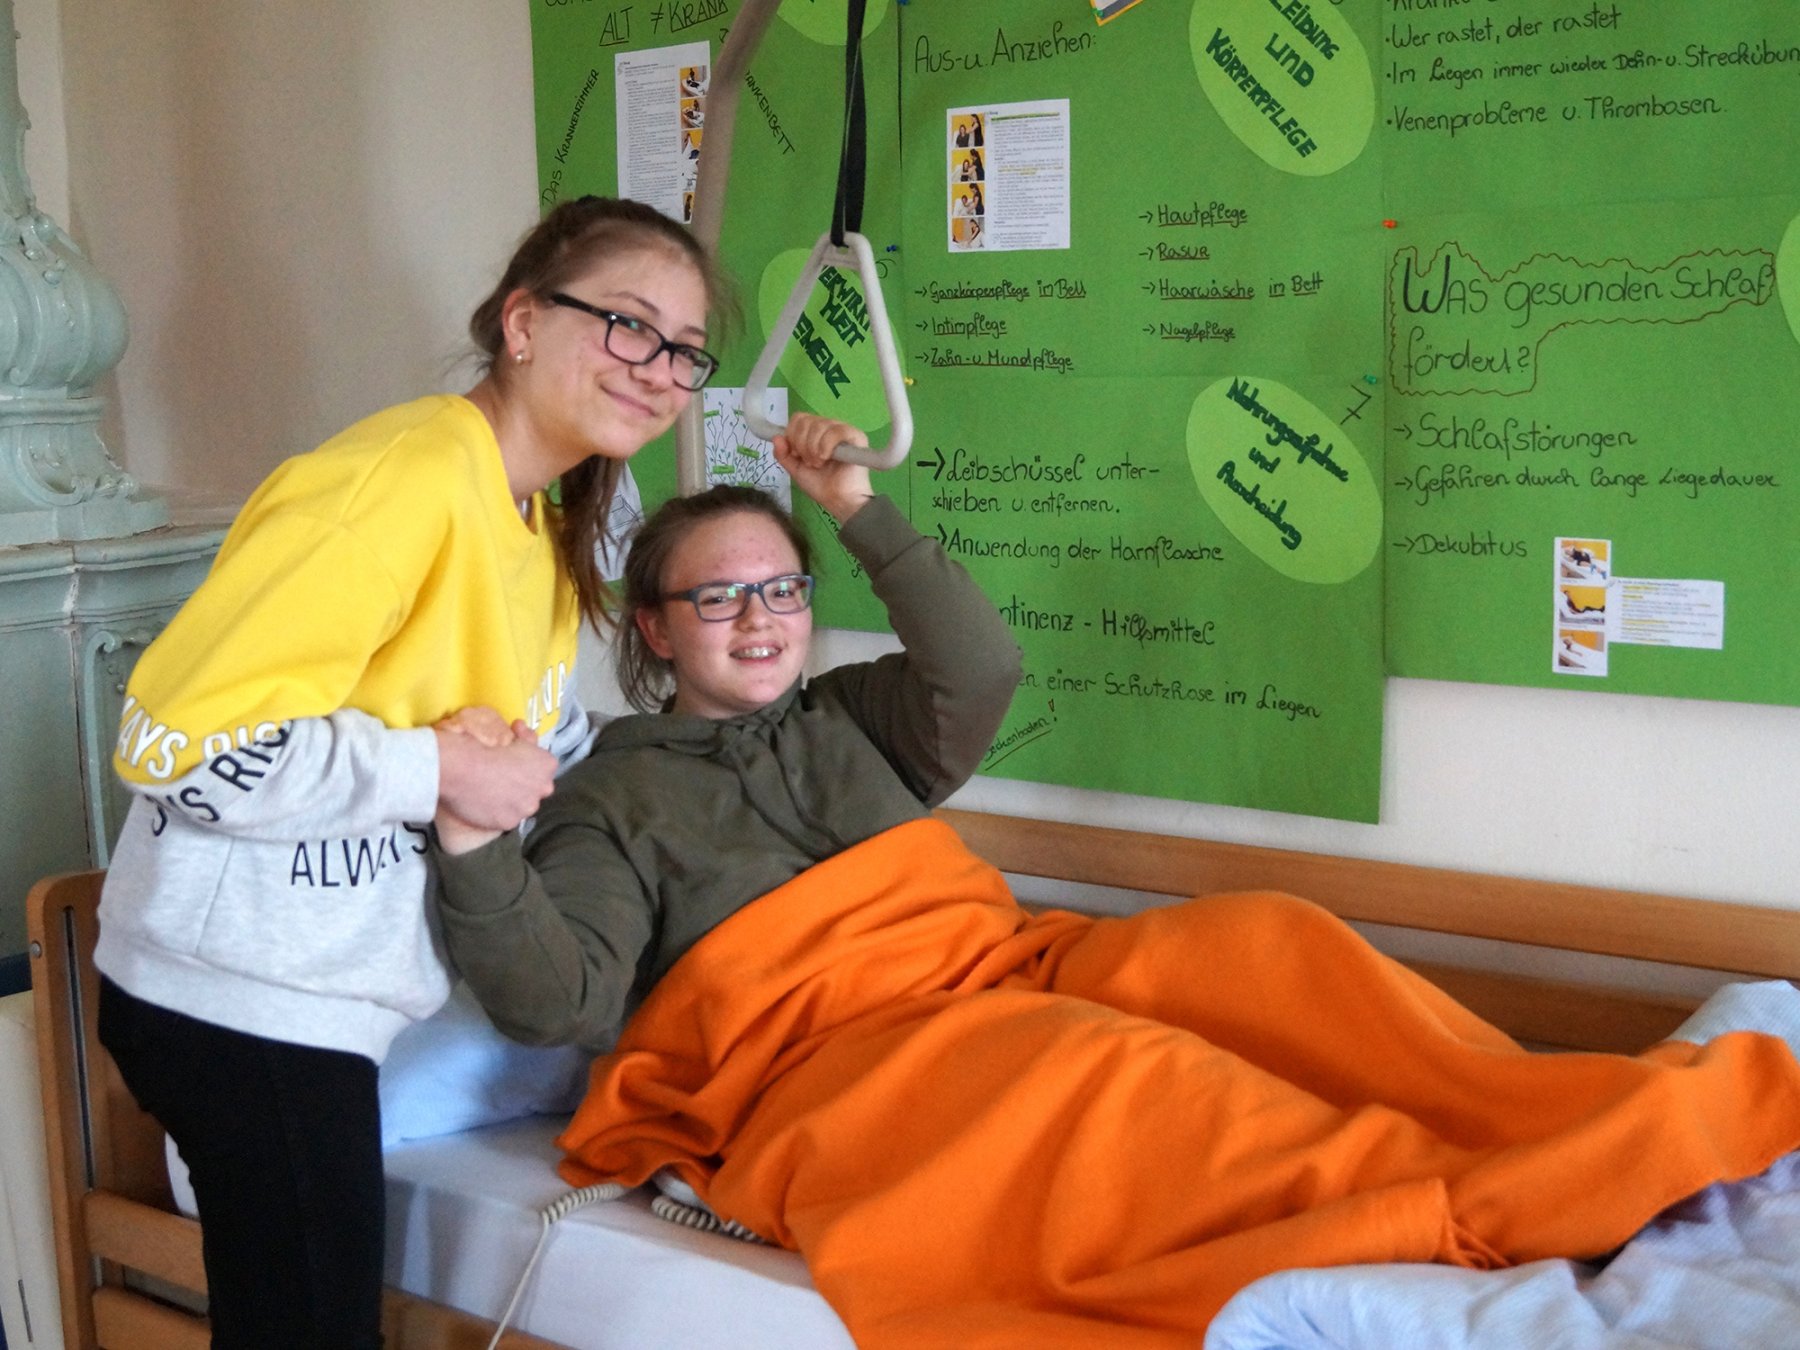 Schülerin stützt eine andere Schülerin, die in einem Pflegebett liegt